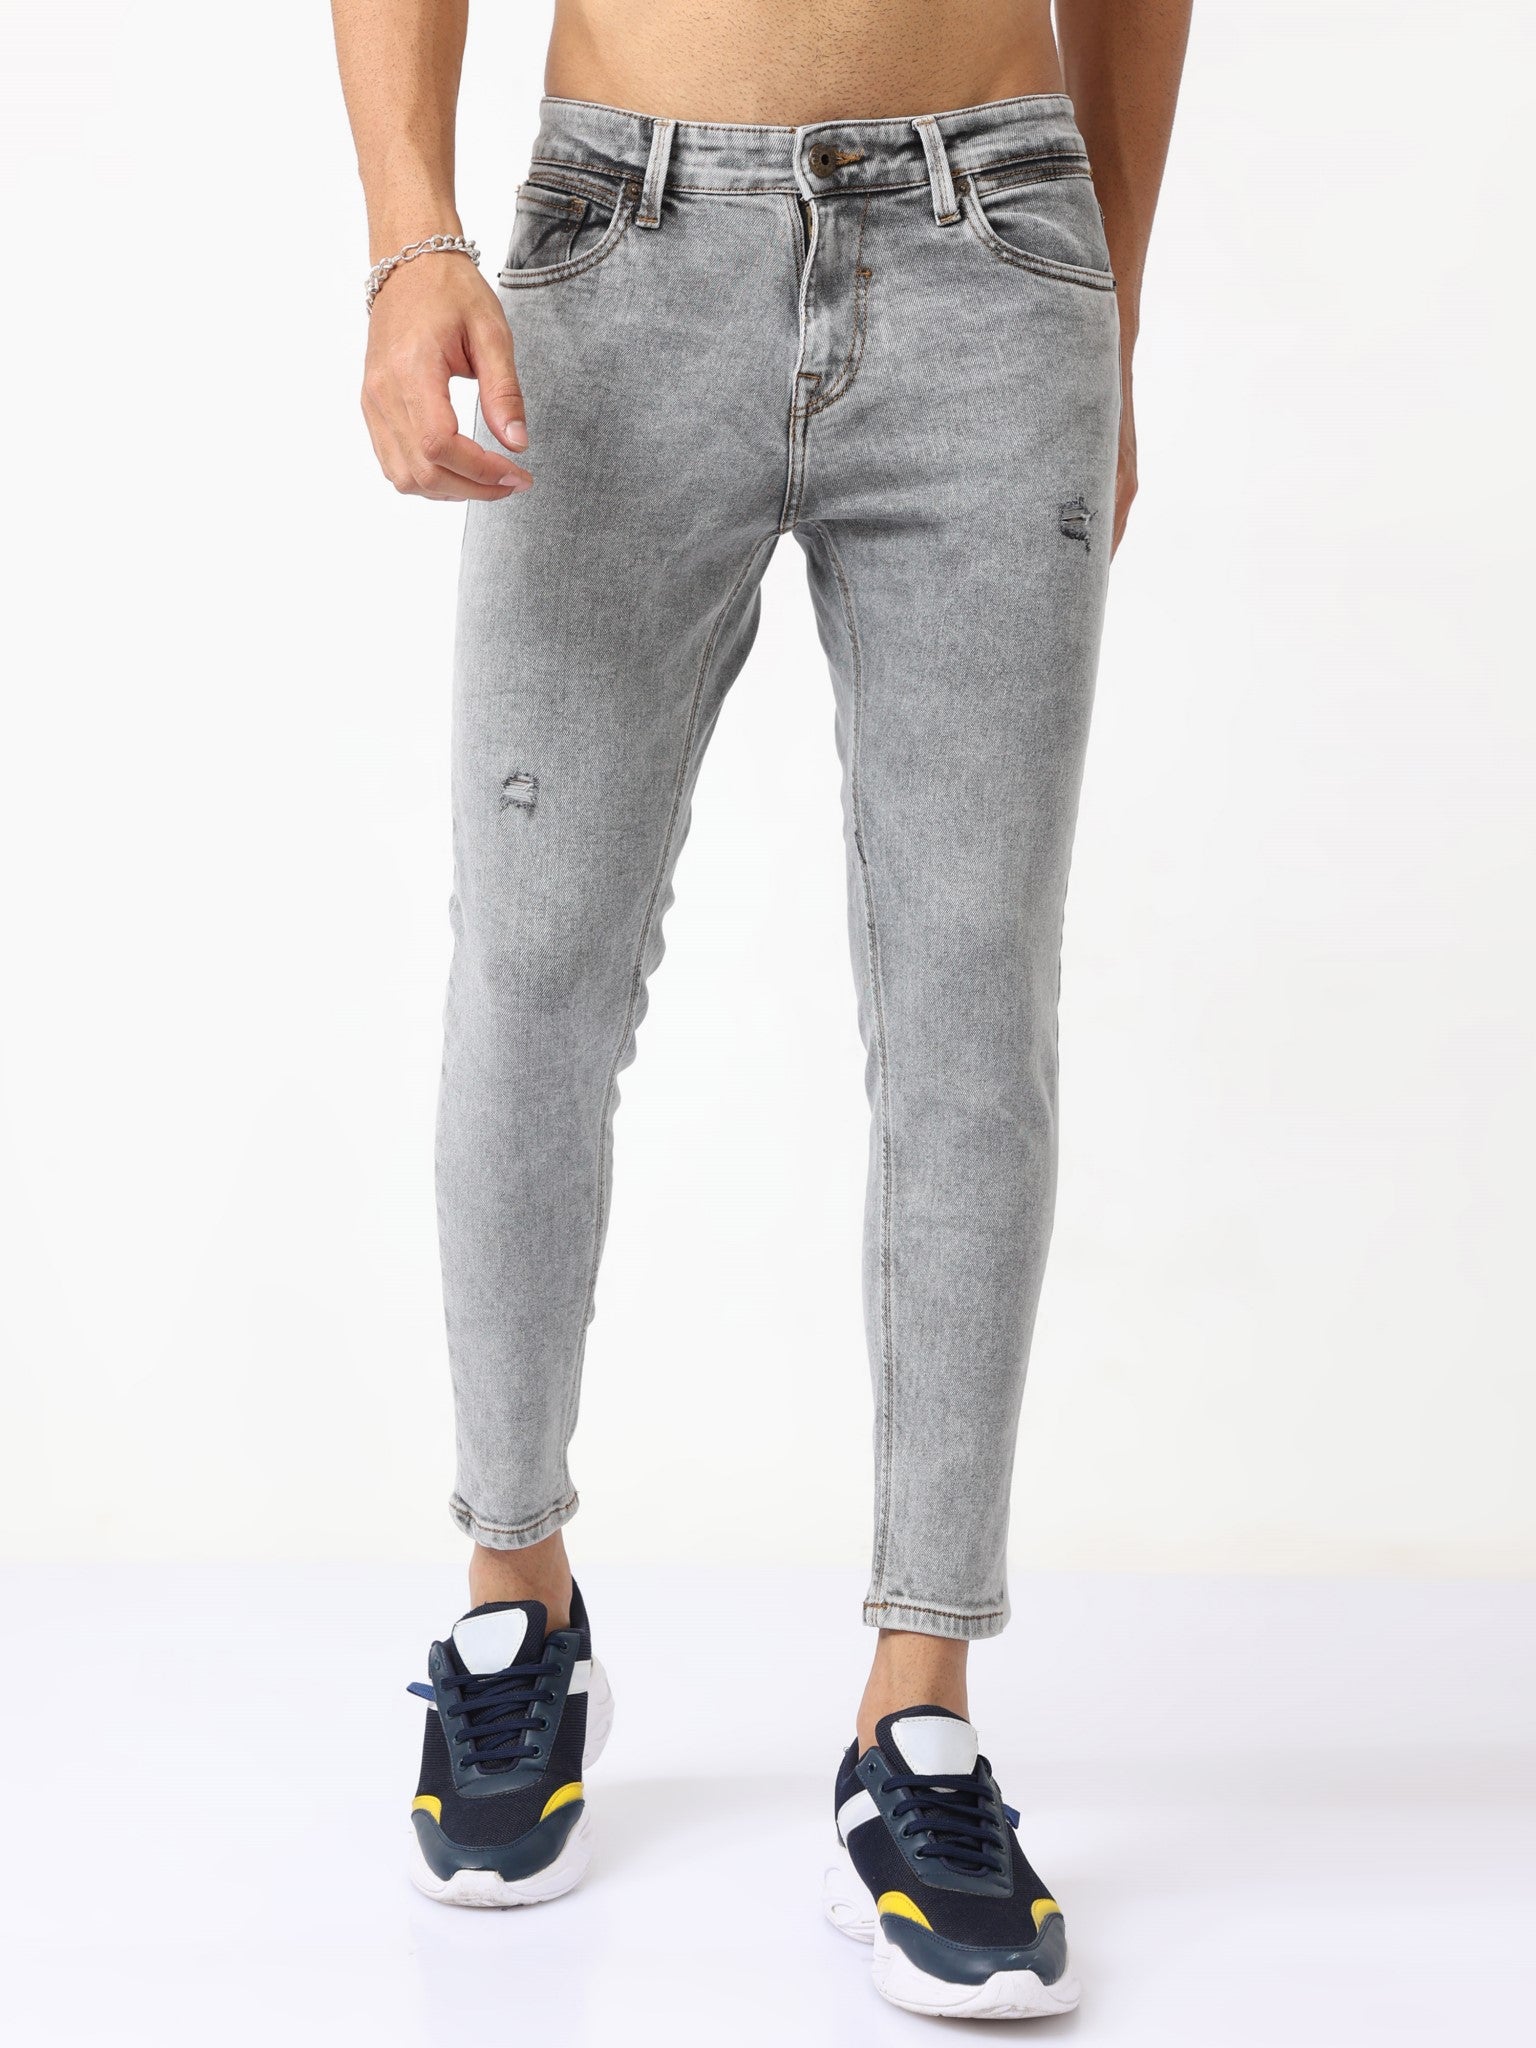 Wickham Skinny Jeans for Men